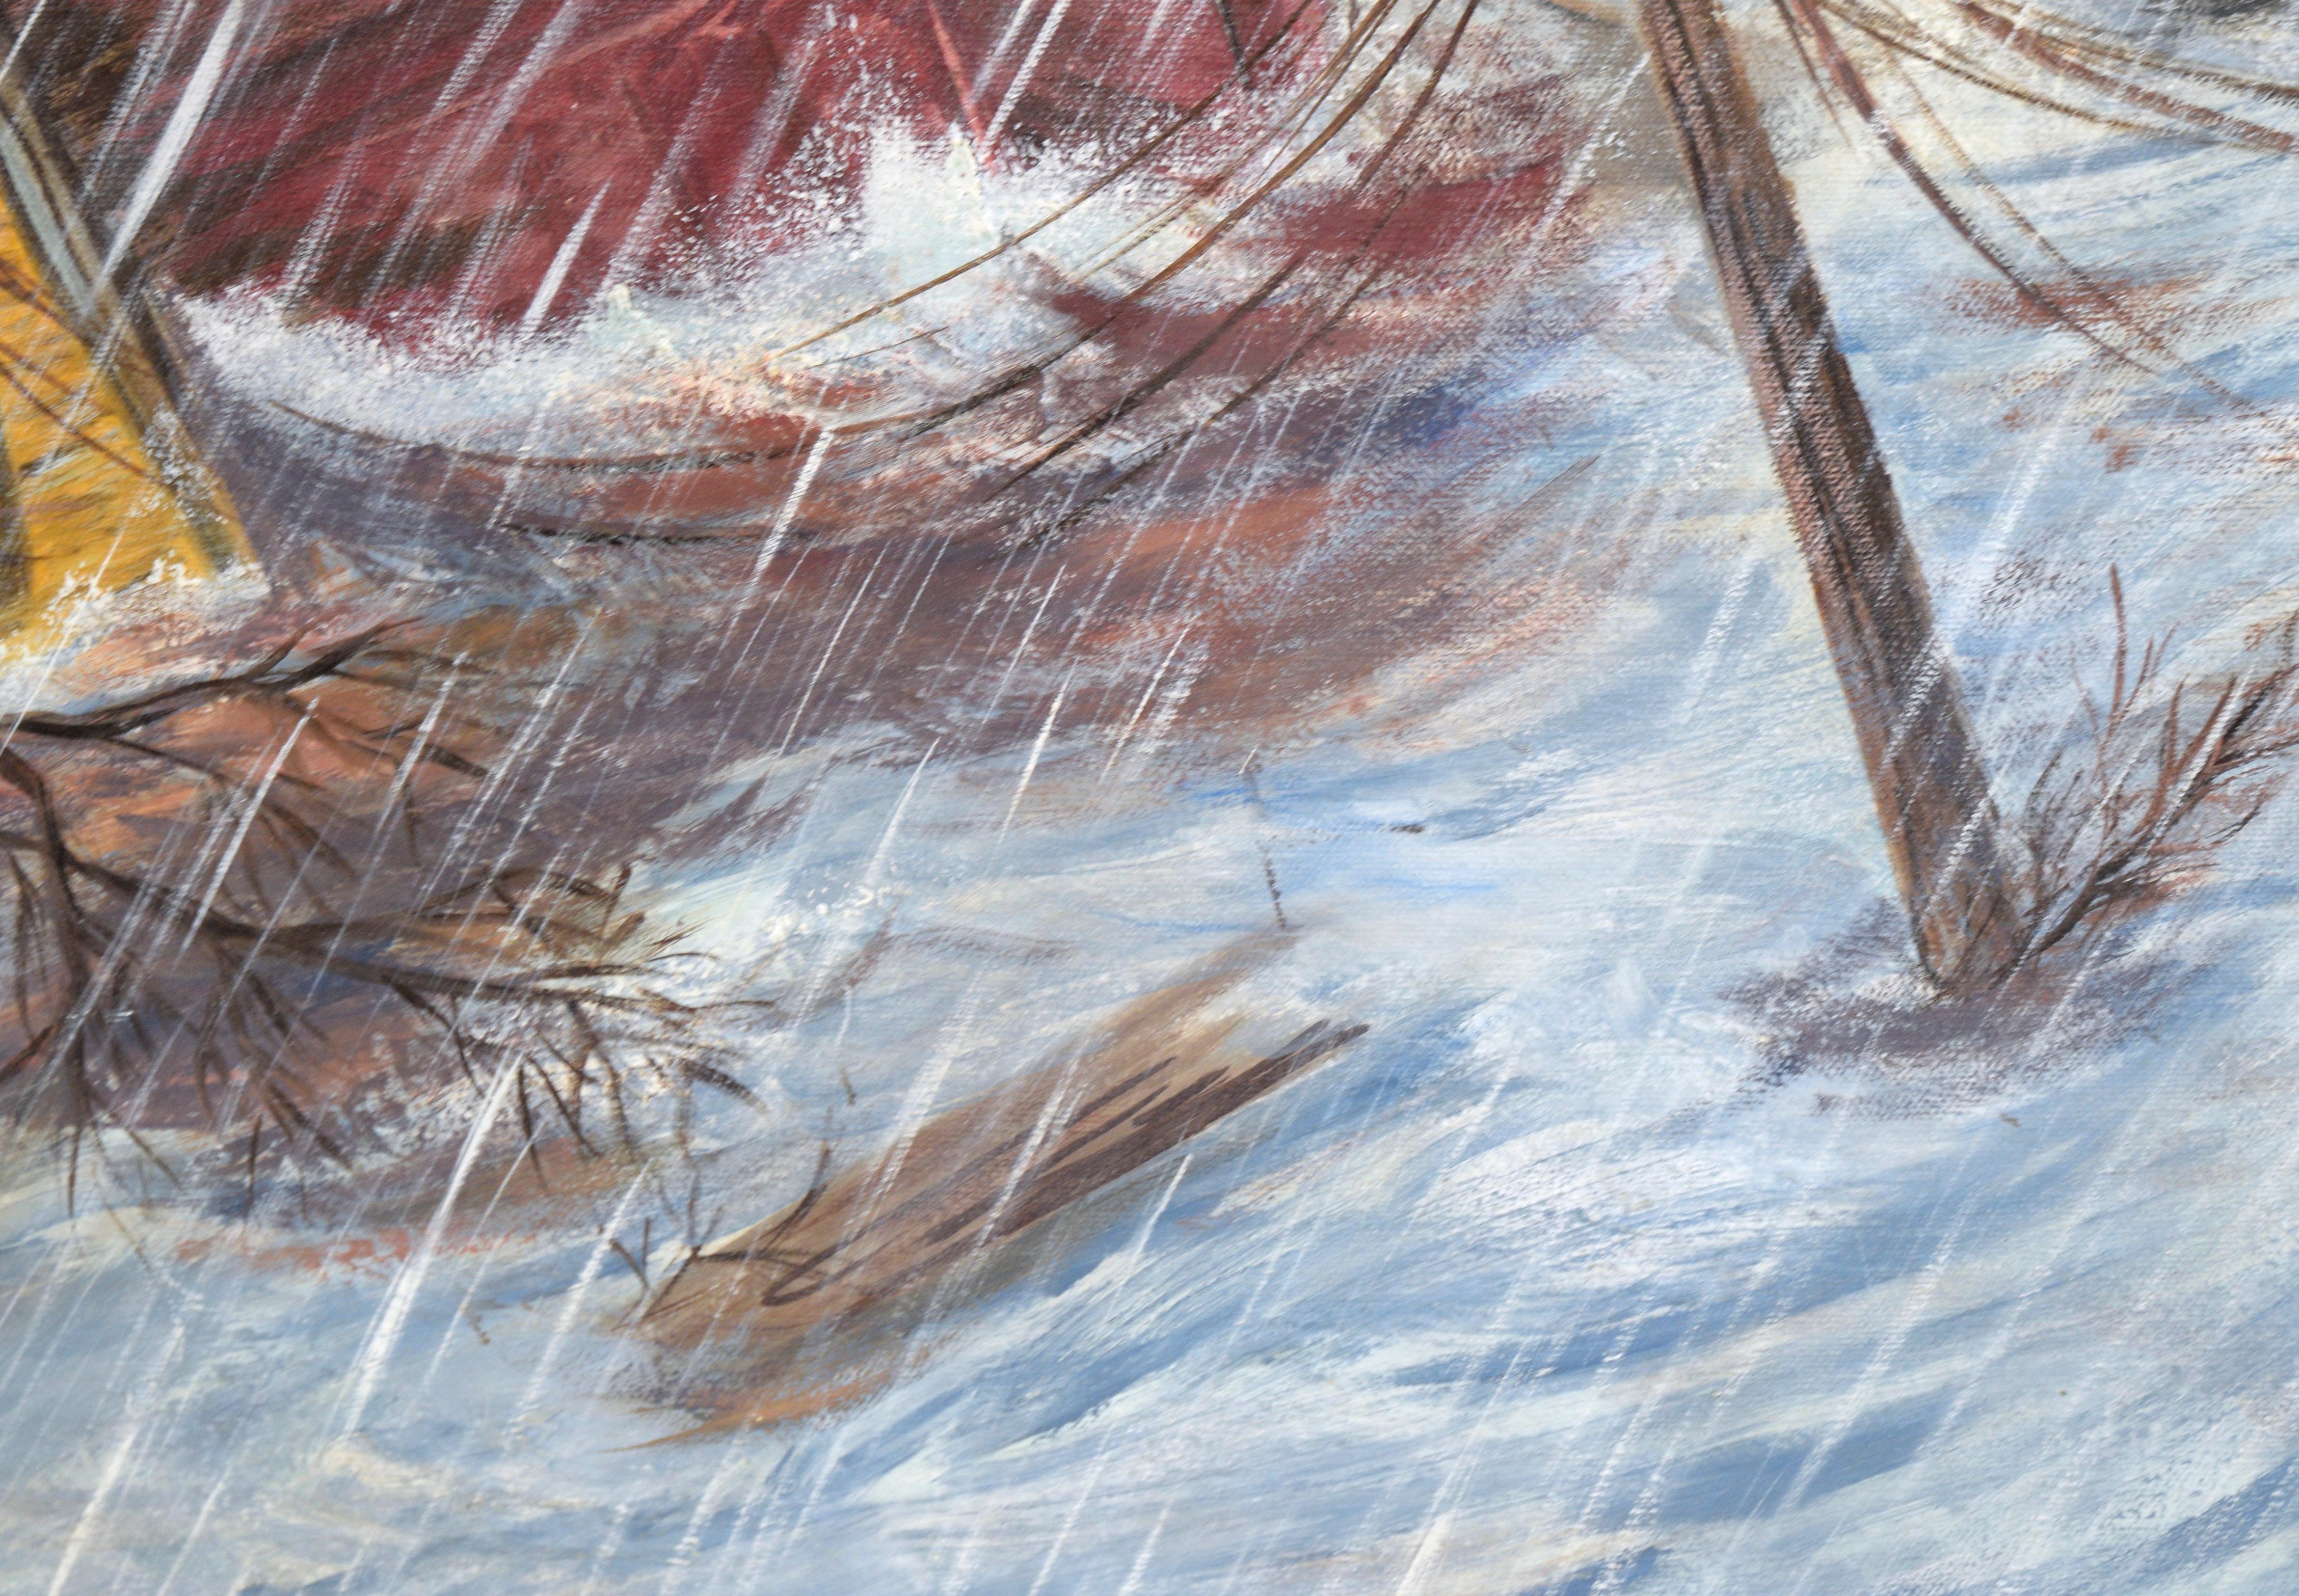 Dramatische Darstellung einer Überschwemmung durch einen unbekannten Künstler (20. Jahrhundert). Das Hochwasser ist gestiegen und strömt durch eine Stadt, in der es immer noch regnet. Ein Haus steht noch, aber ein anderes rotes Haus ist völlig